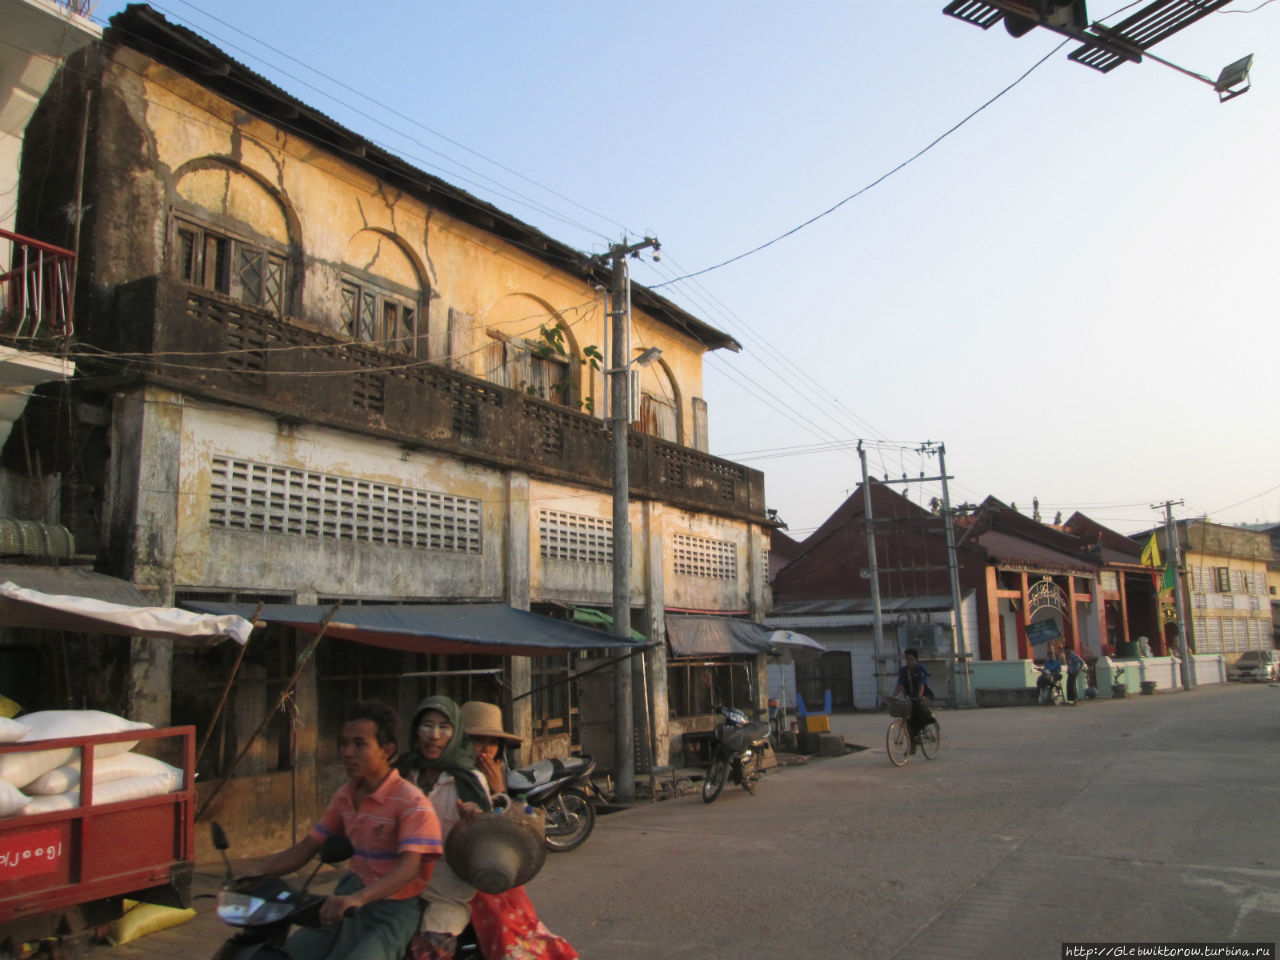 Гордость Патейна — его набережная Патейн, Мьянма